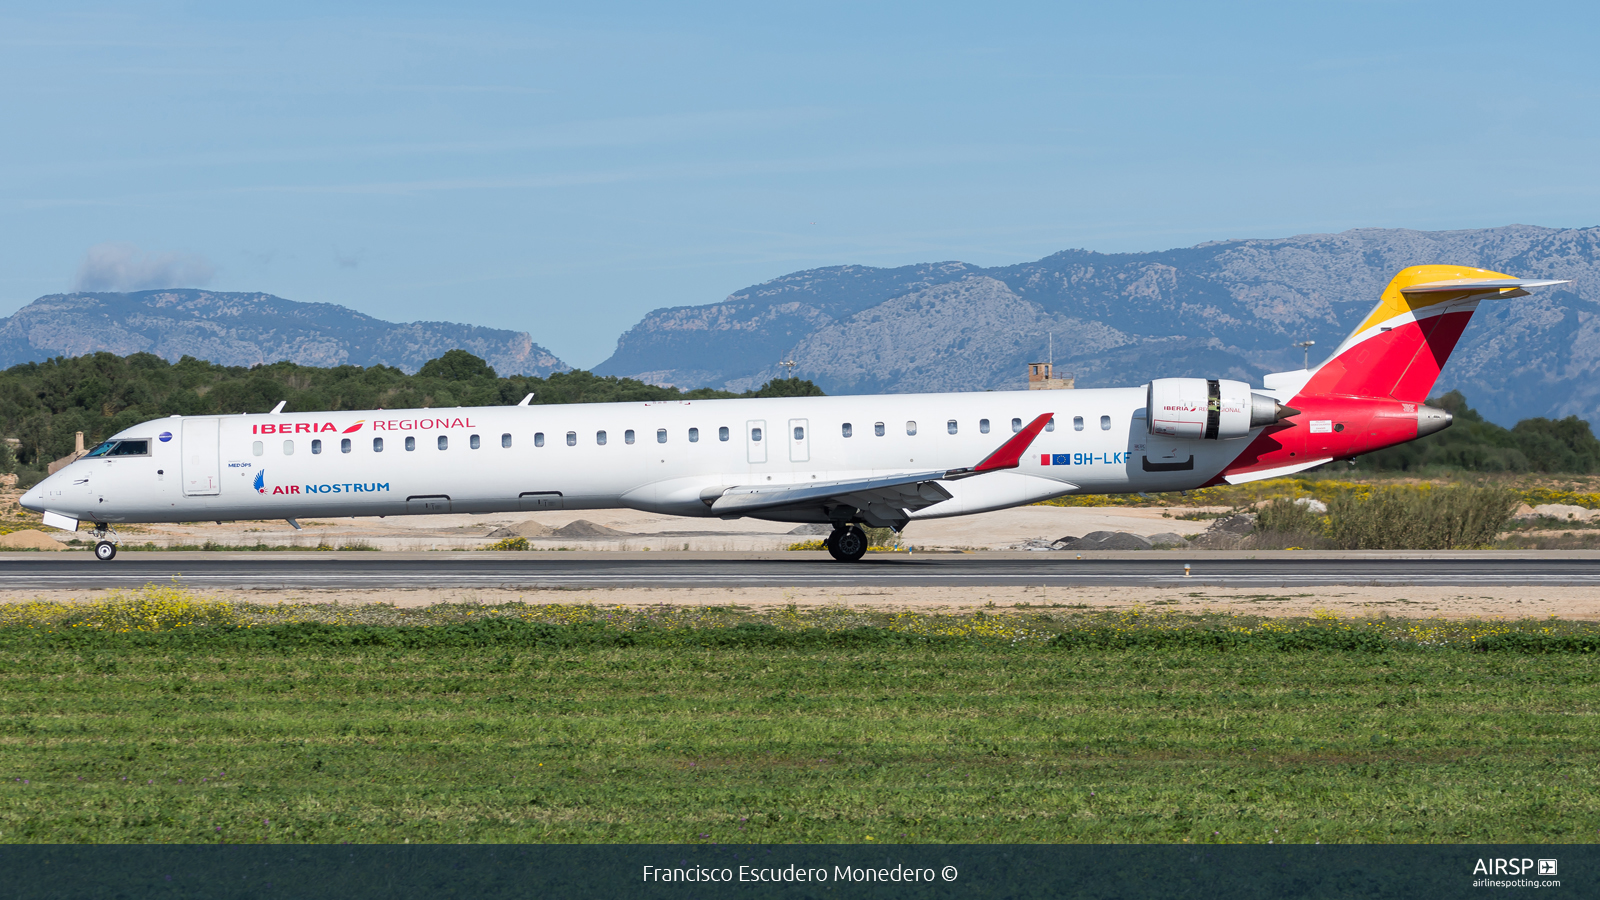 Air Nostrum Iberia Regional  Mitsubishi CRJ-1000  9H-LKF